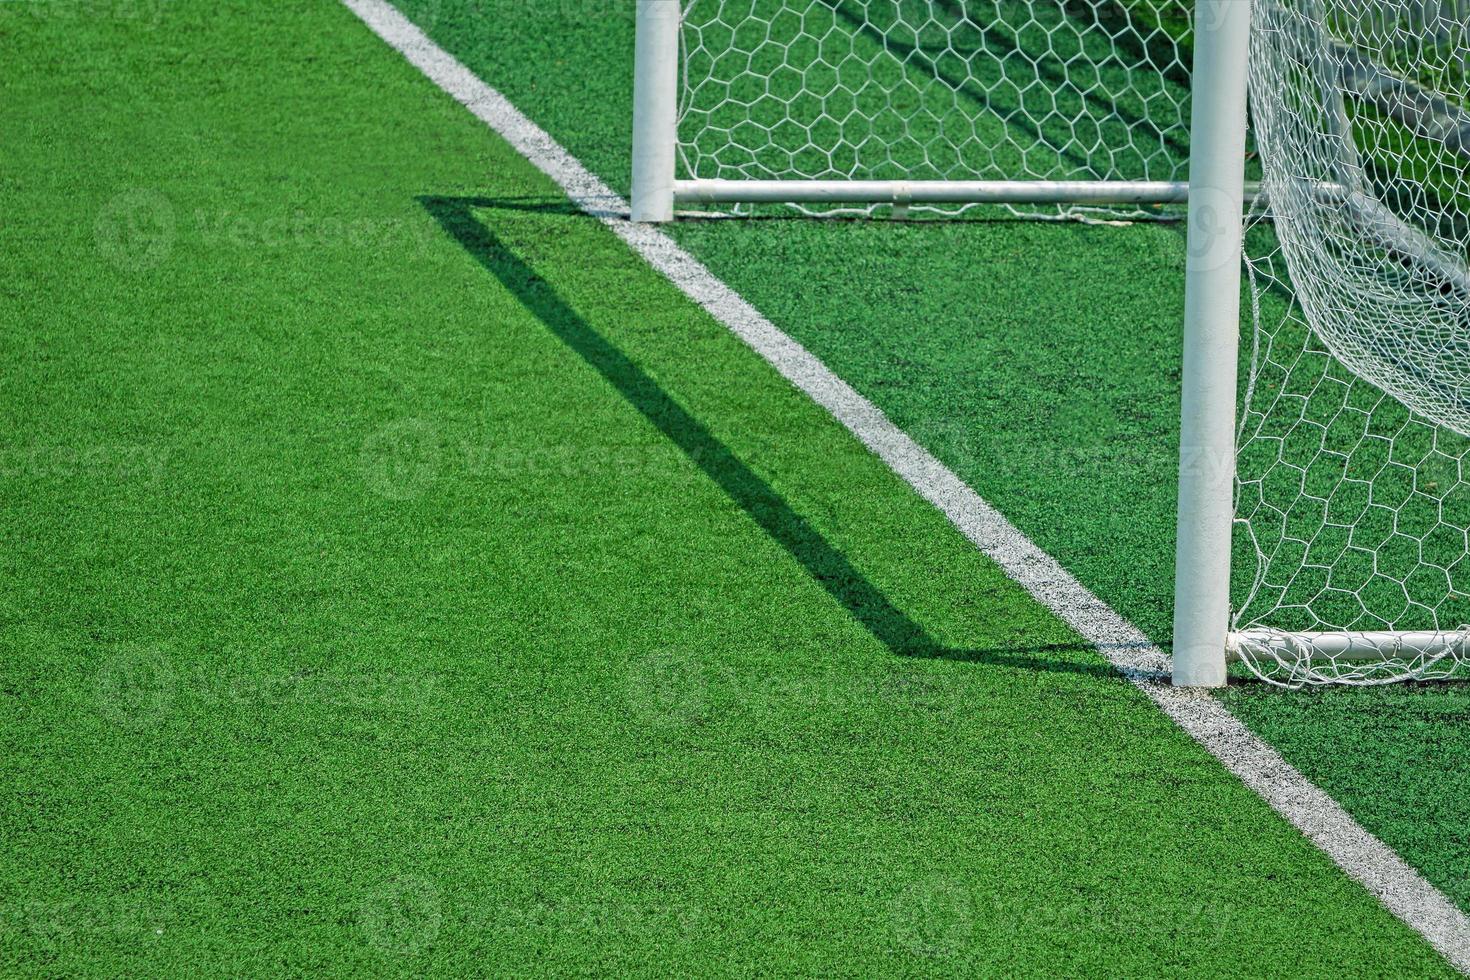 relva artificial de futebol campo de futebol foto